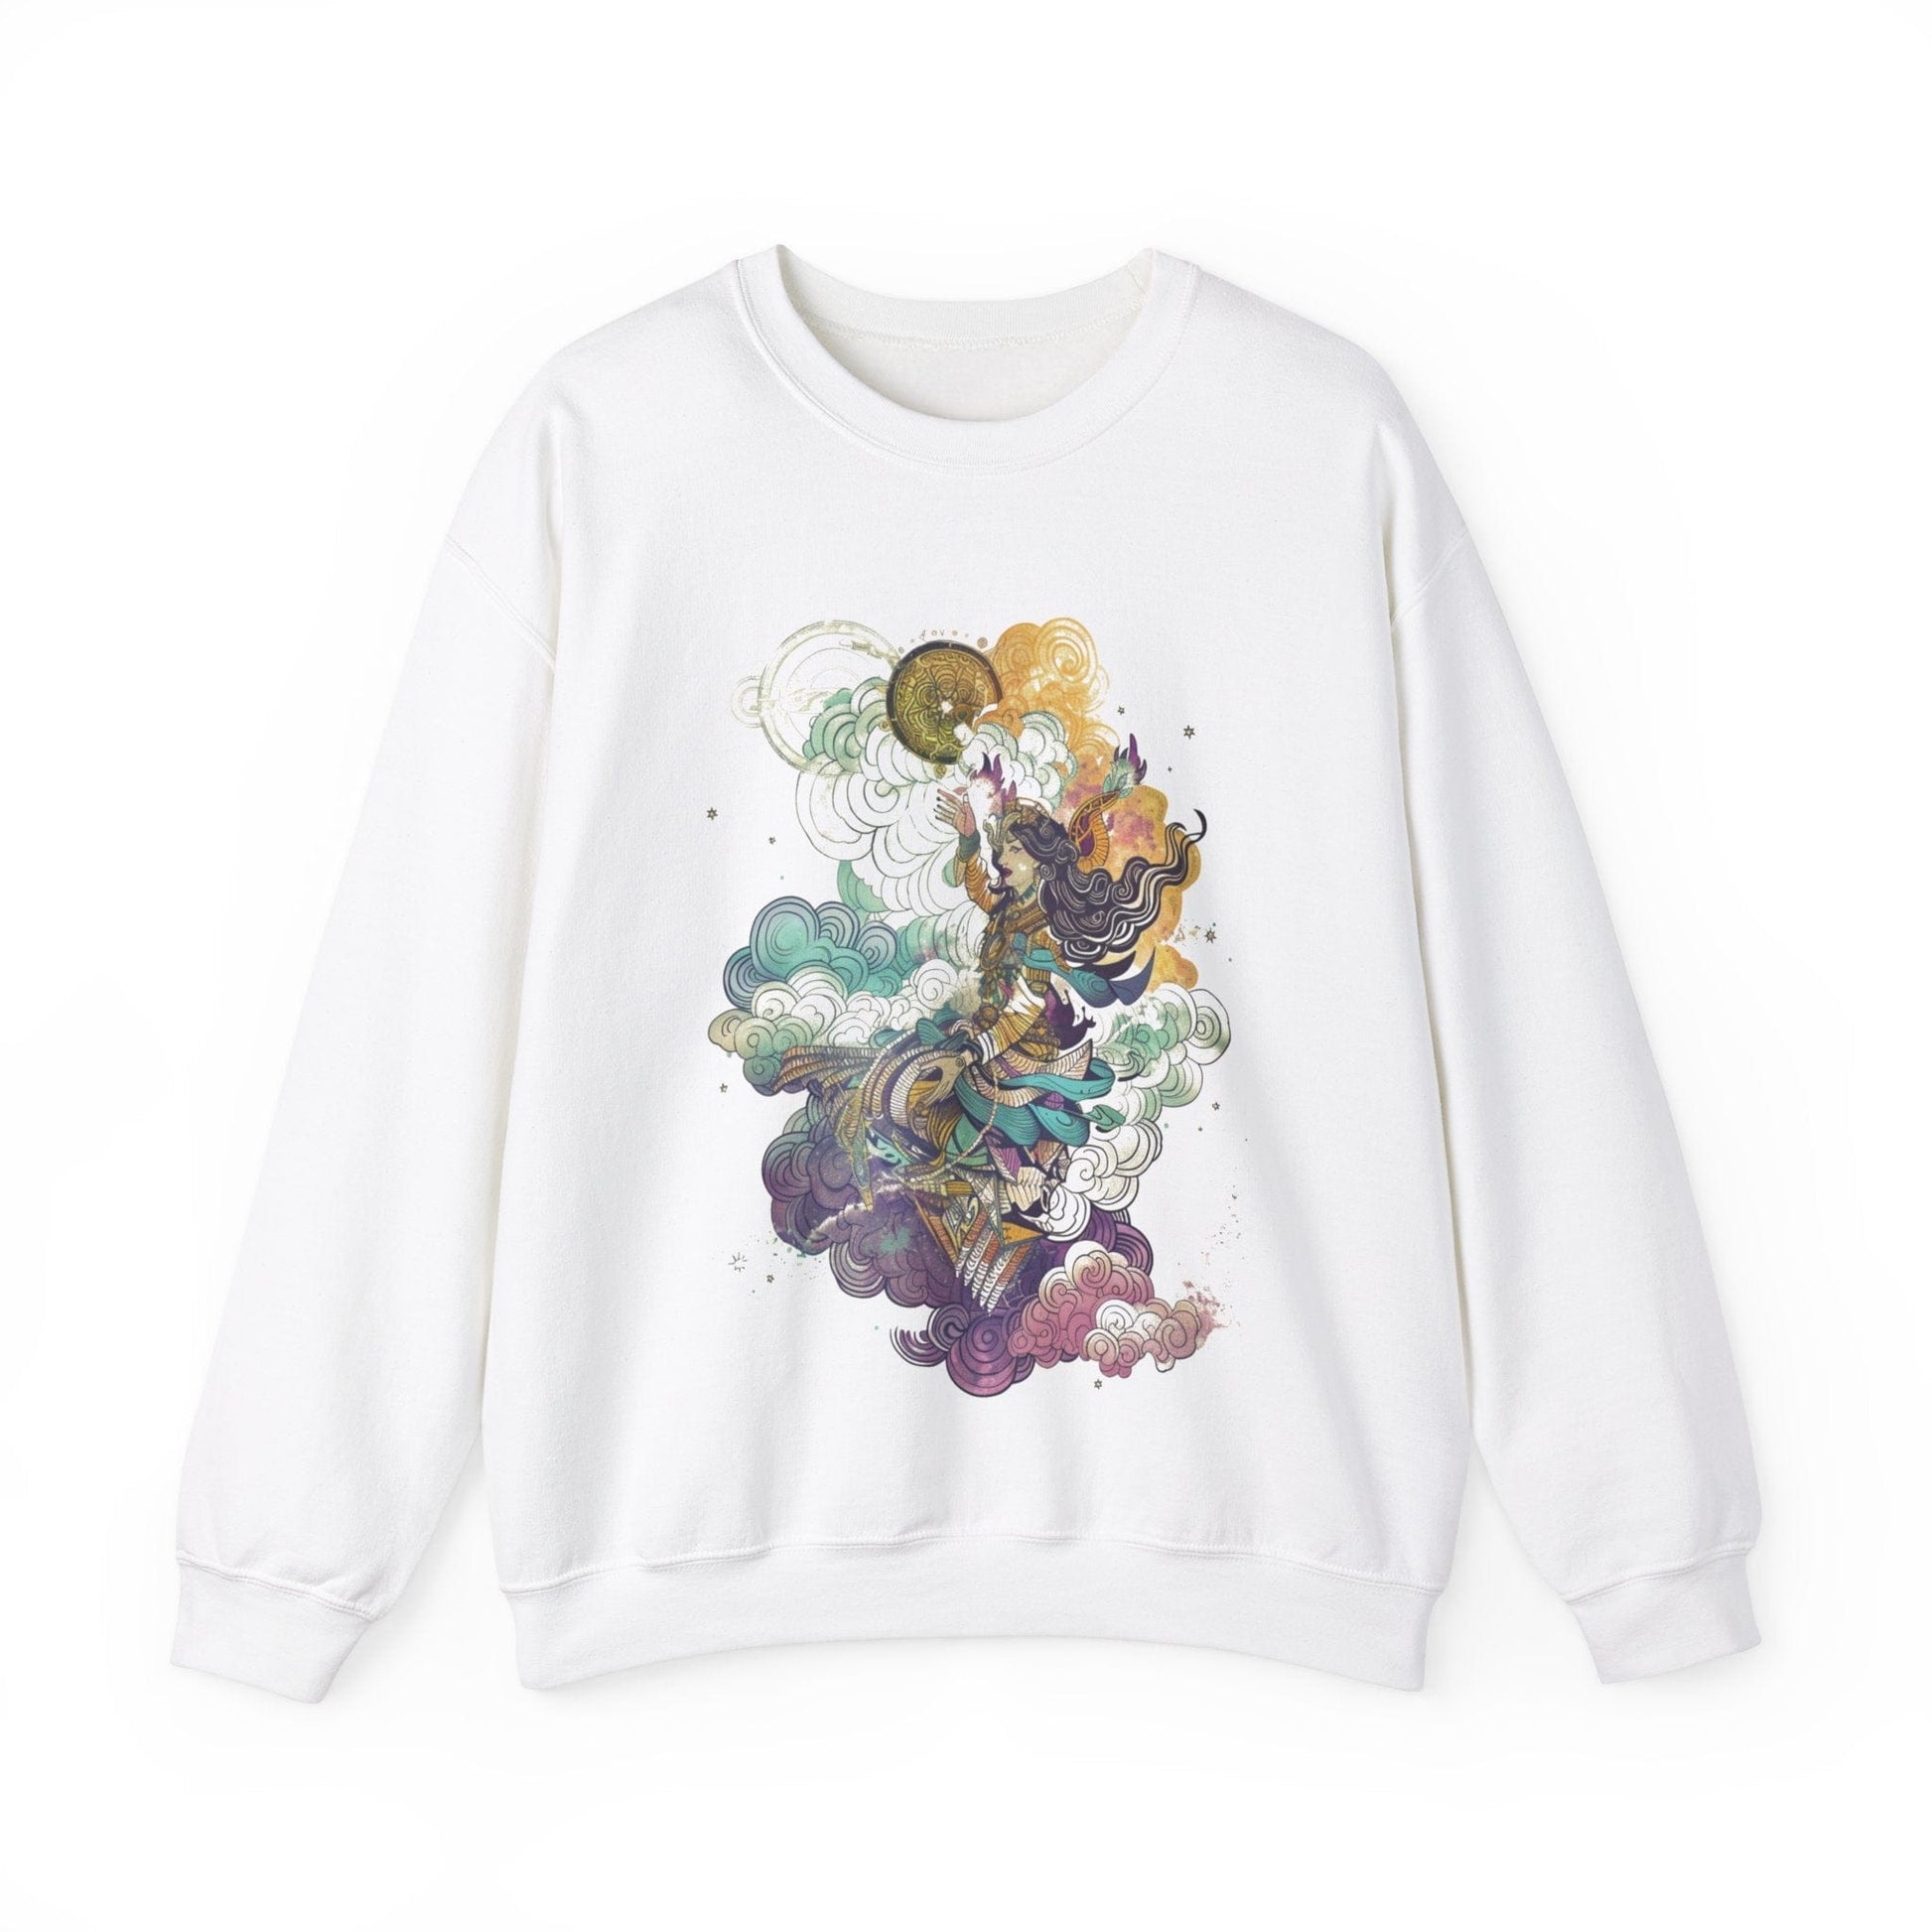 Sweatshirt S / White Astrological Elegance Sweater: Cosmic Grace Unfolds